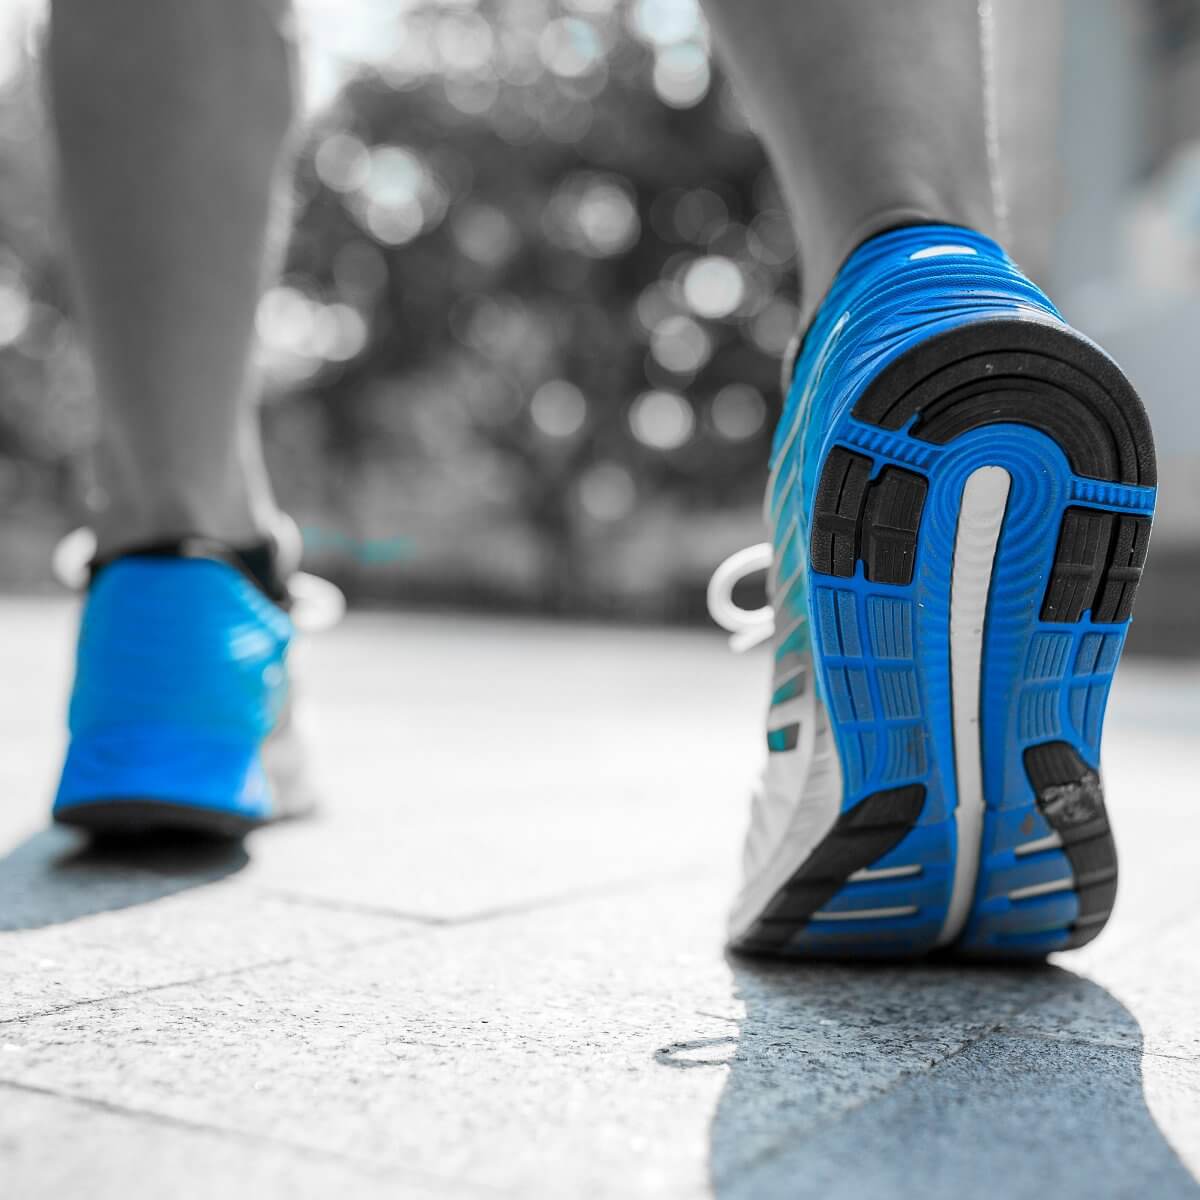 Køb støddæmpende indlægssåler, der aflaster og lindrer smerter i dine fødder ved sport med løb og vandring. Køb 1 par såler billigt her!